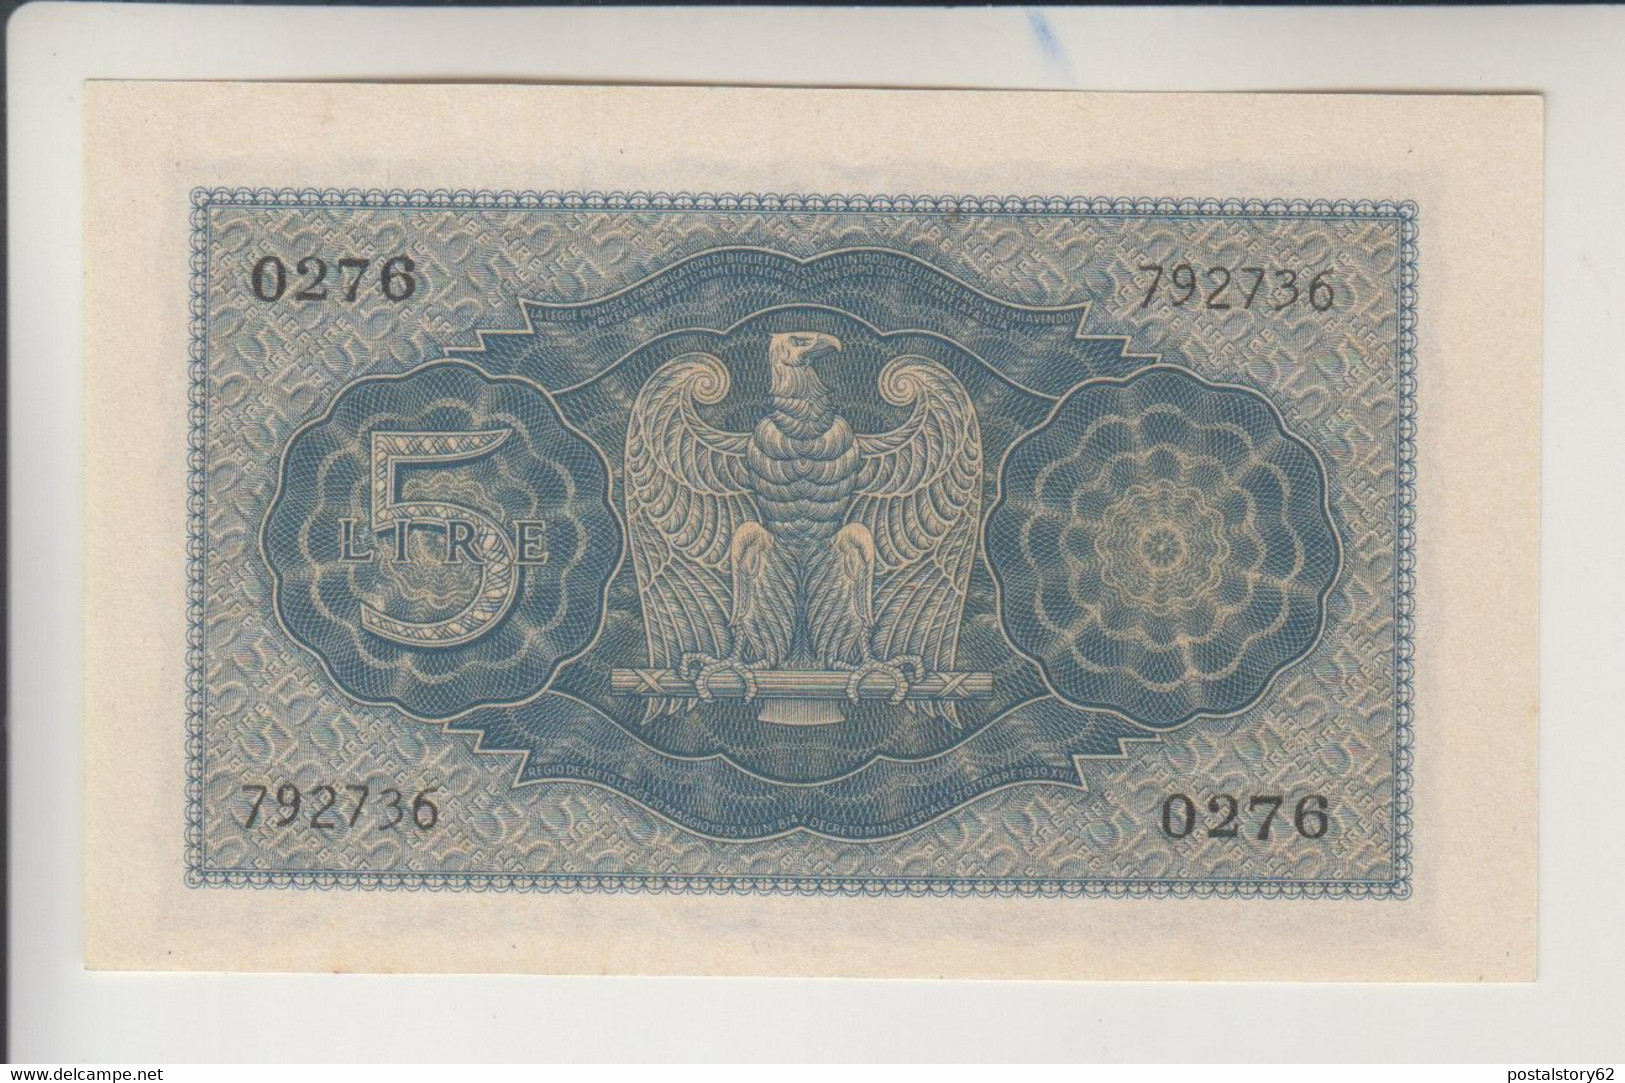 Regno D'Italia, Vittorio Emanuele III - 5 Lire Biglietto Di Stato 1940 - FDS - Italia – 5 Lire